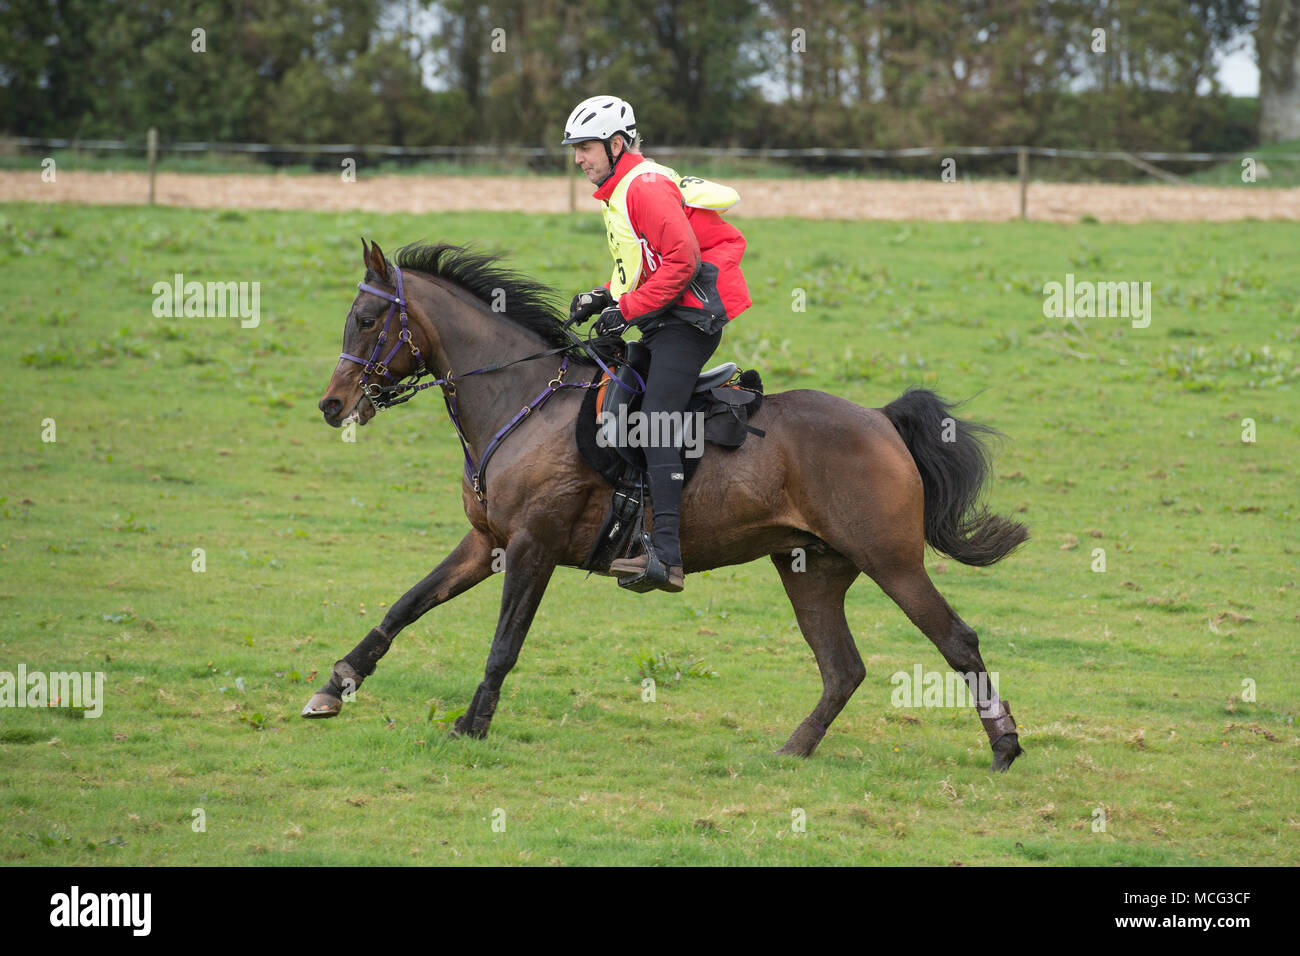 Hombre galopando un caballo en una carrera de resistencia, UK Foto de stock